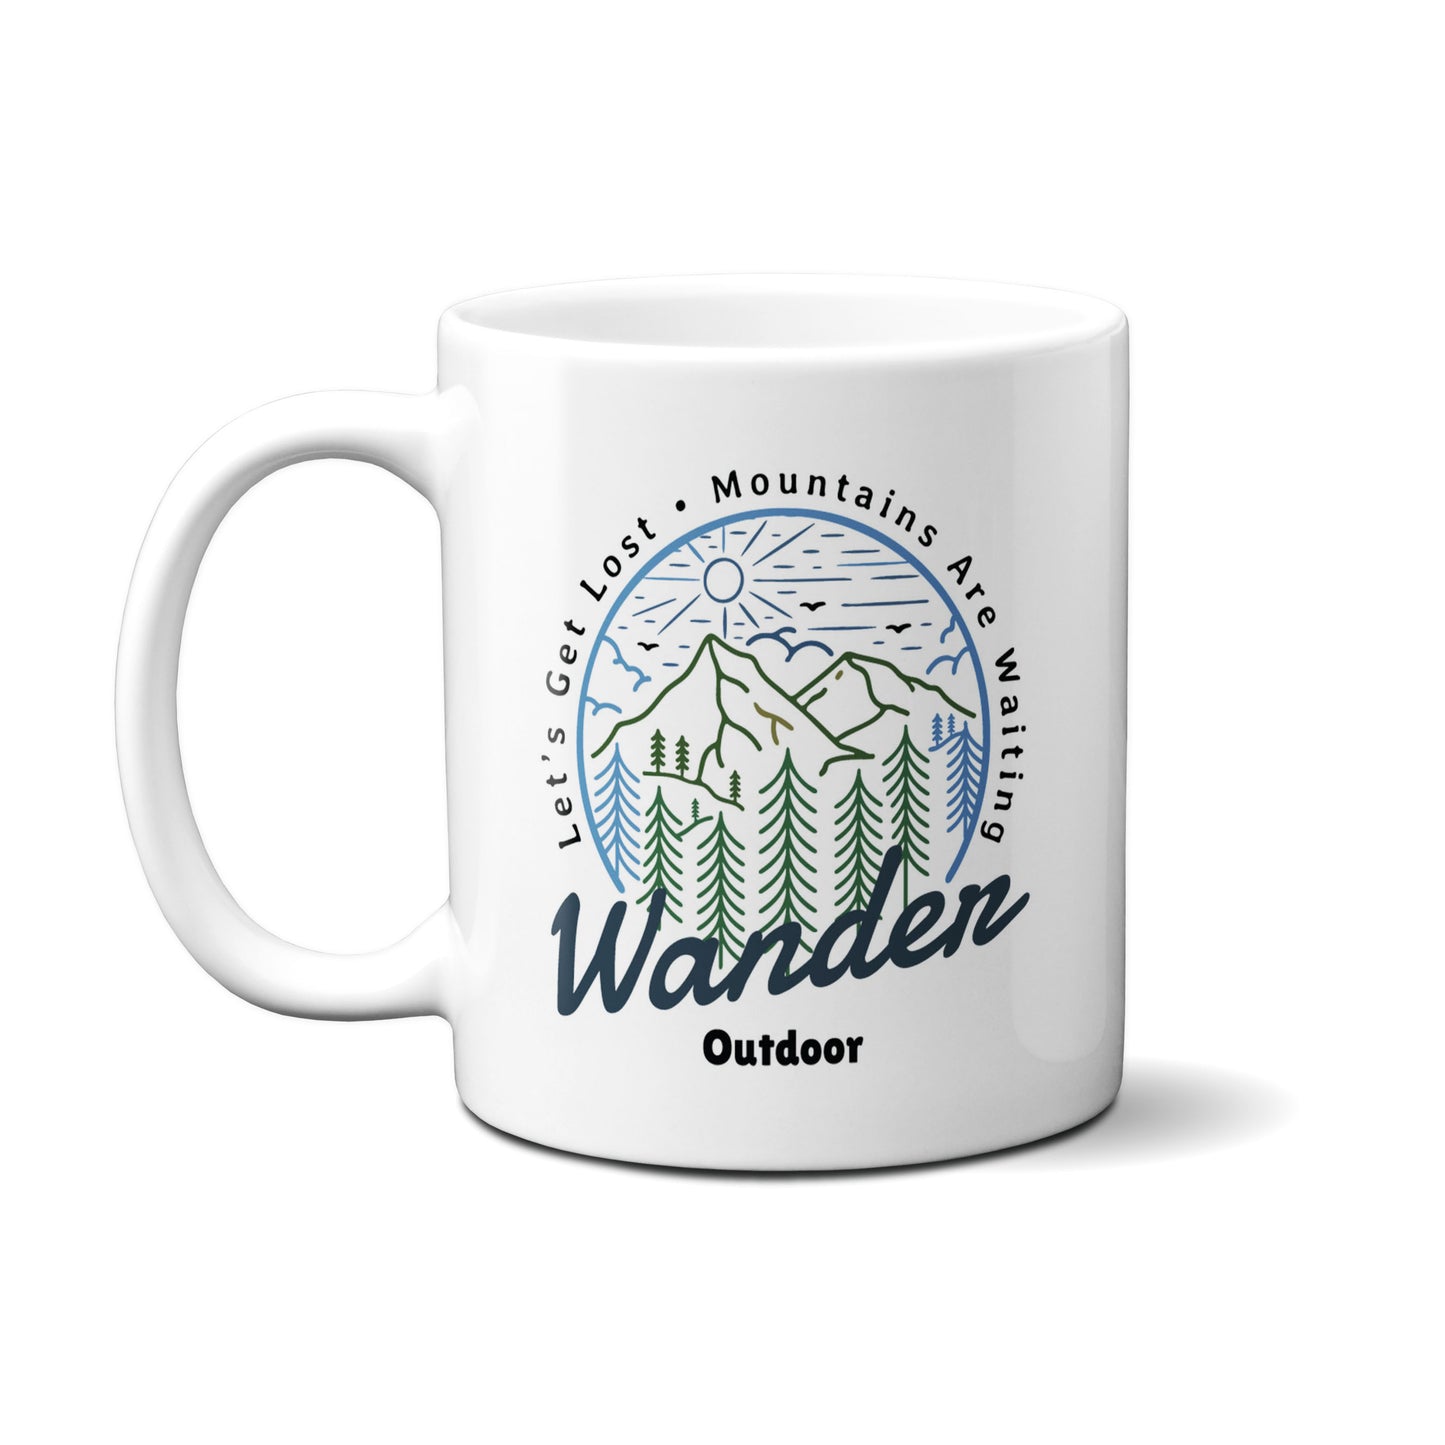 Wander Outdoor Badge Mug